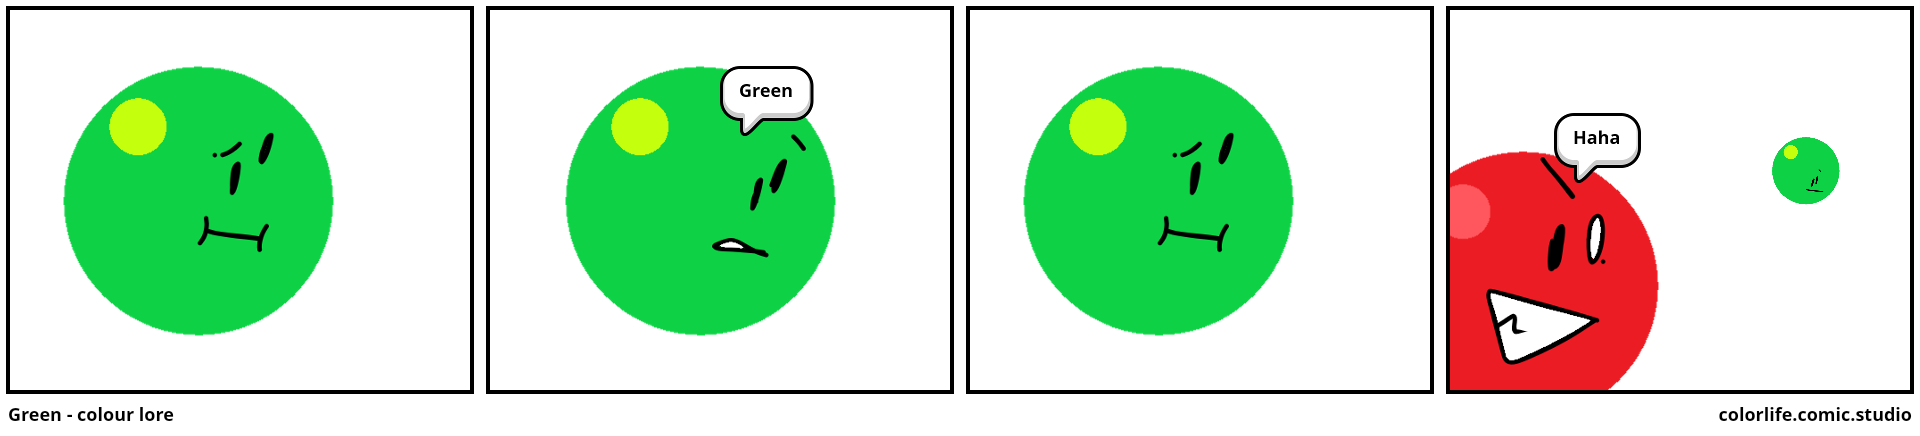 Green - colour lore 